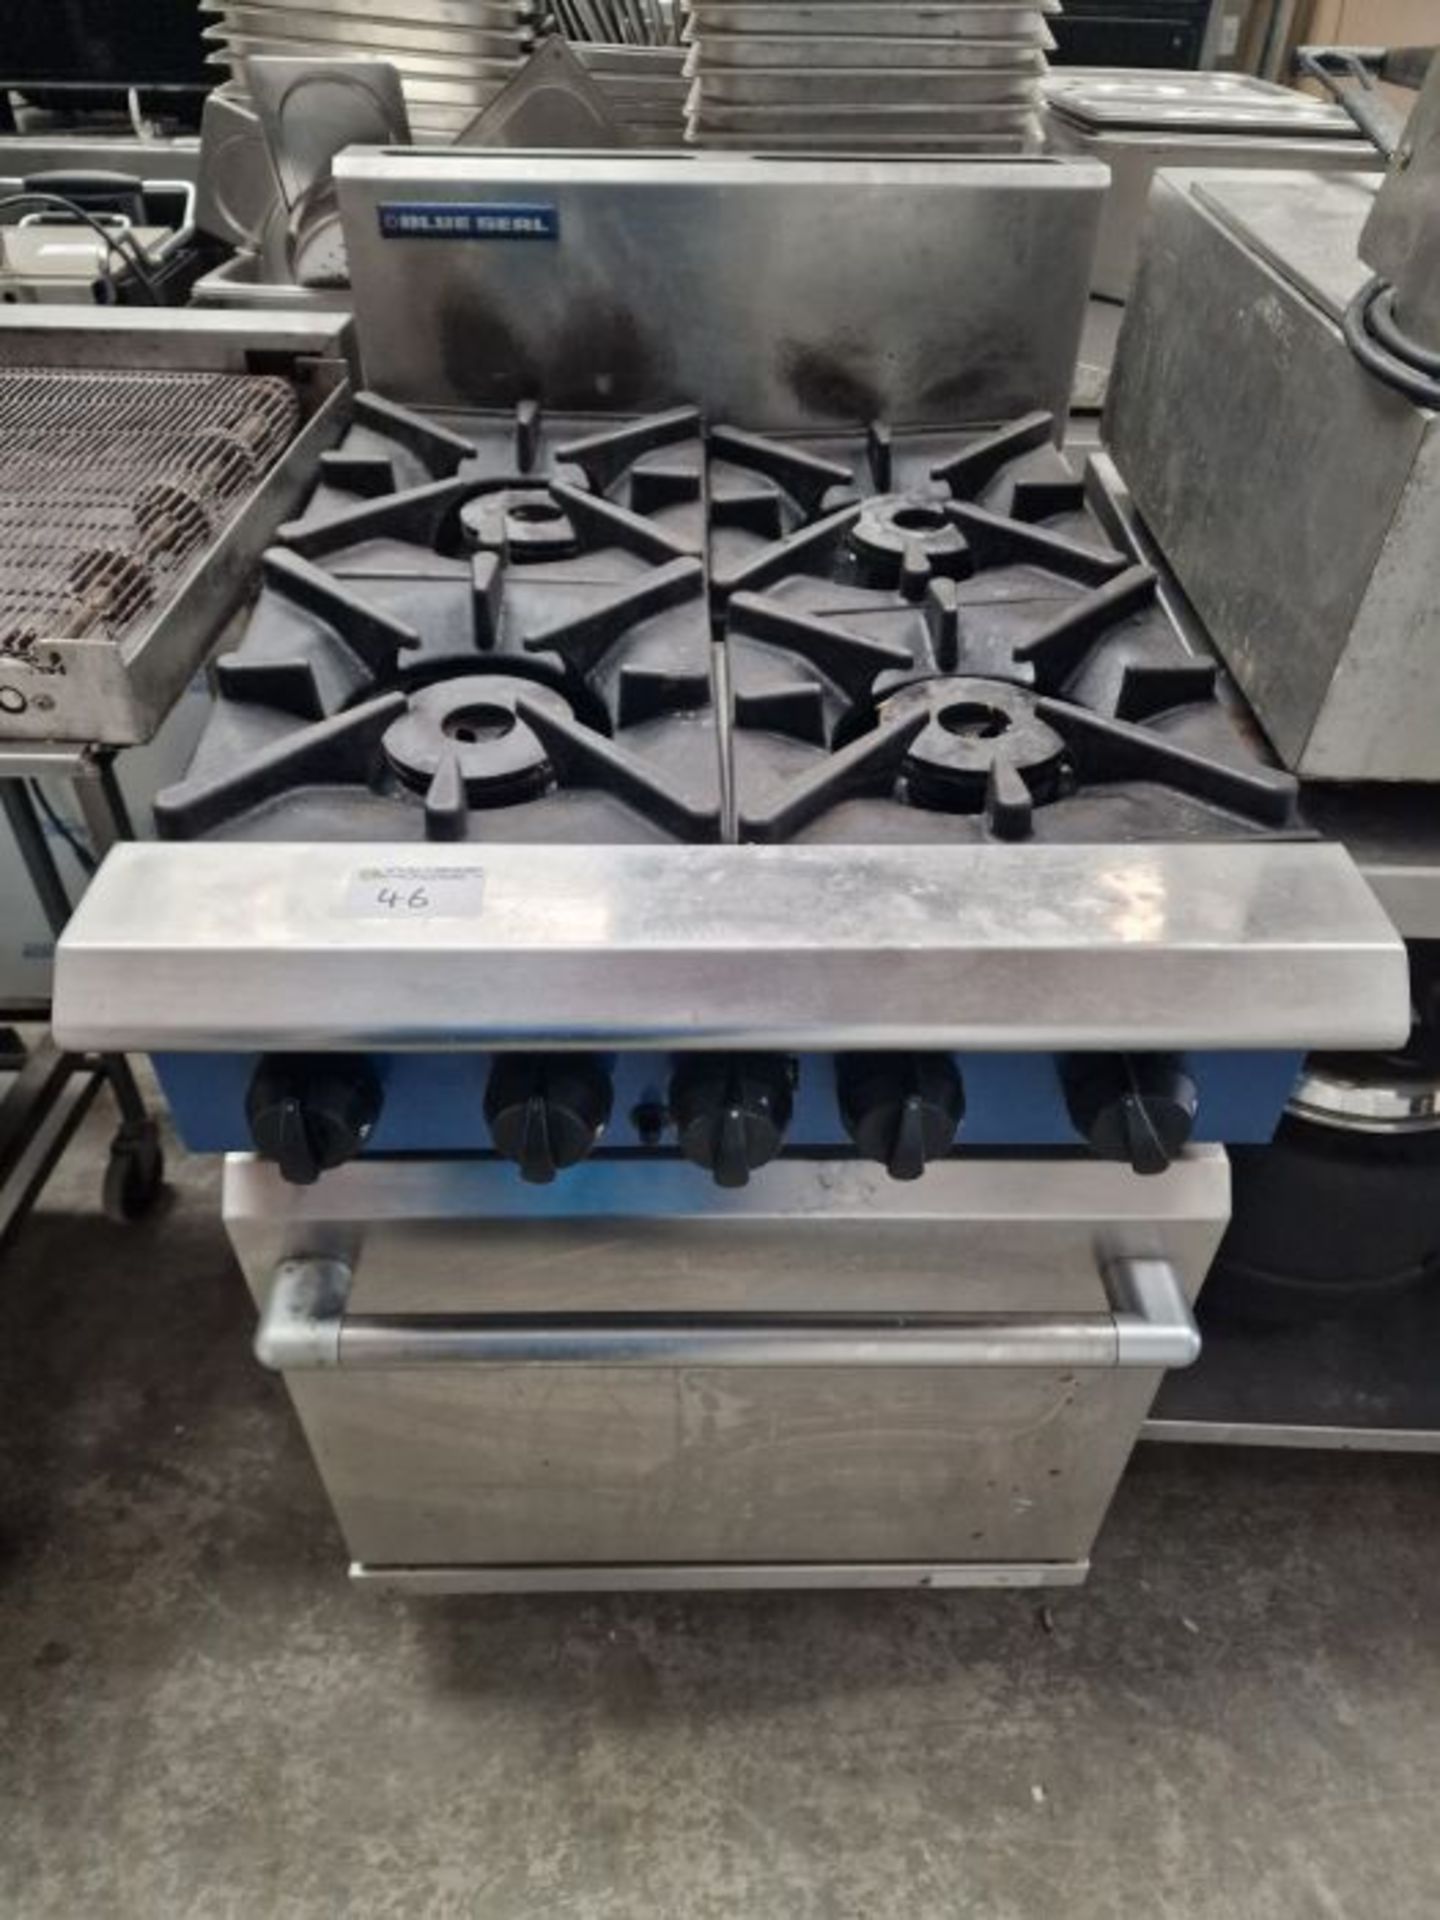 Blue seal 4 burner cooking range. - Image 2 of 3